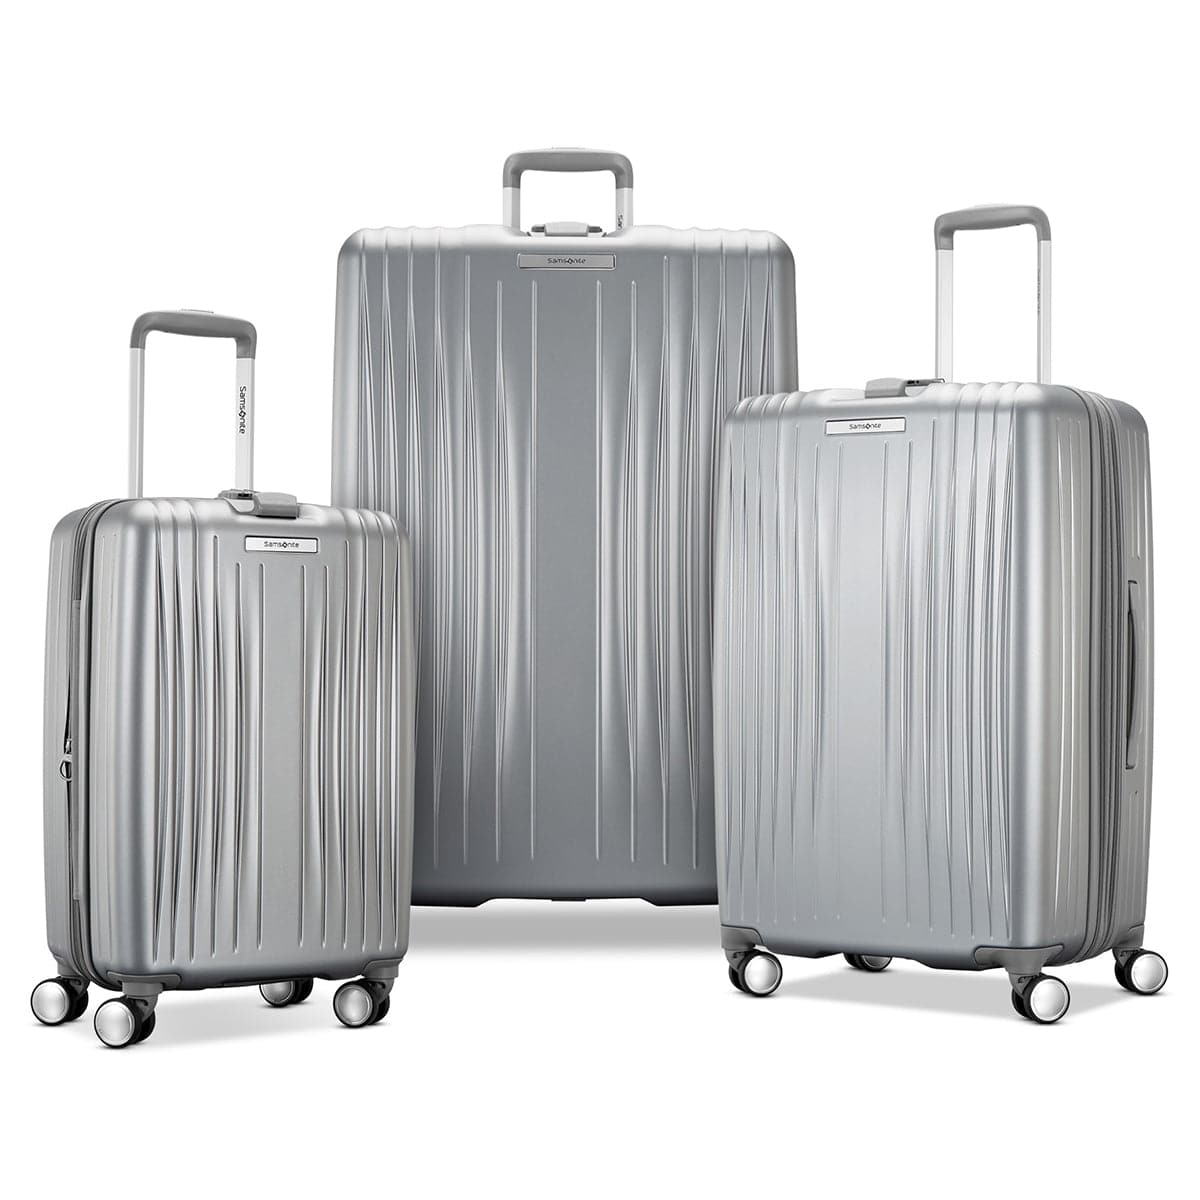 Samsonite Opto 3 3 Piece Luggage Set